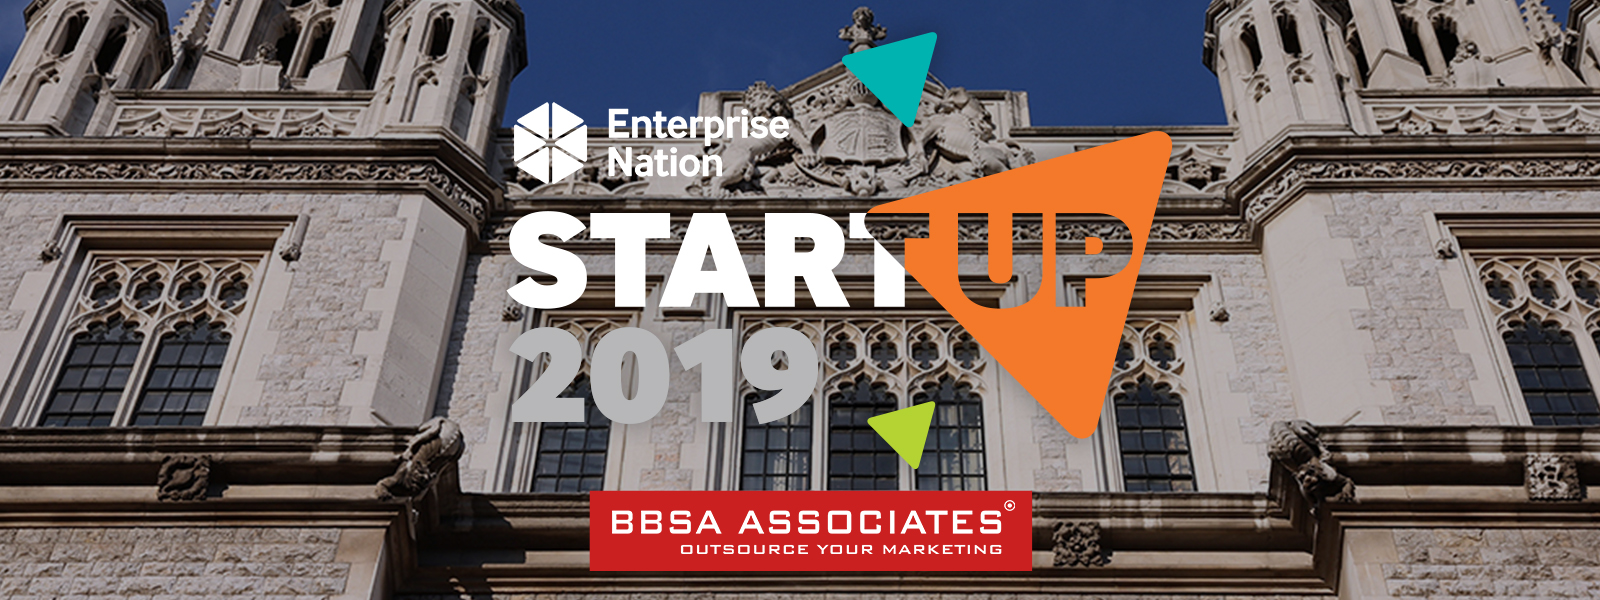 Enterprise Nation Startup Event 2019